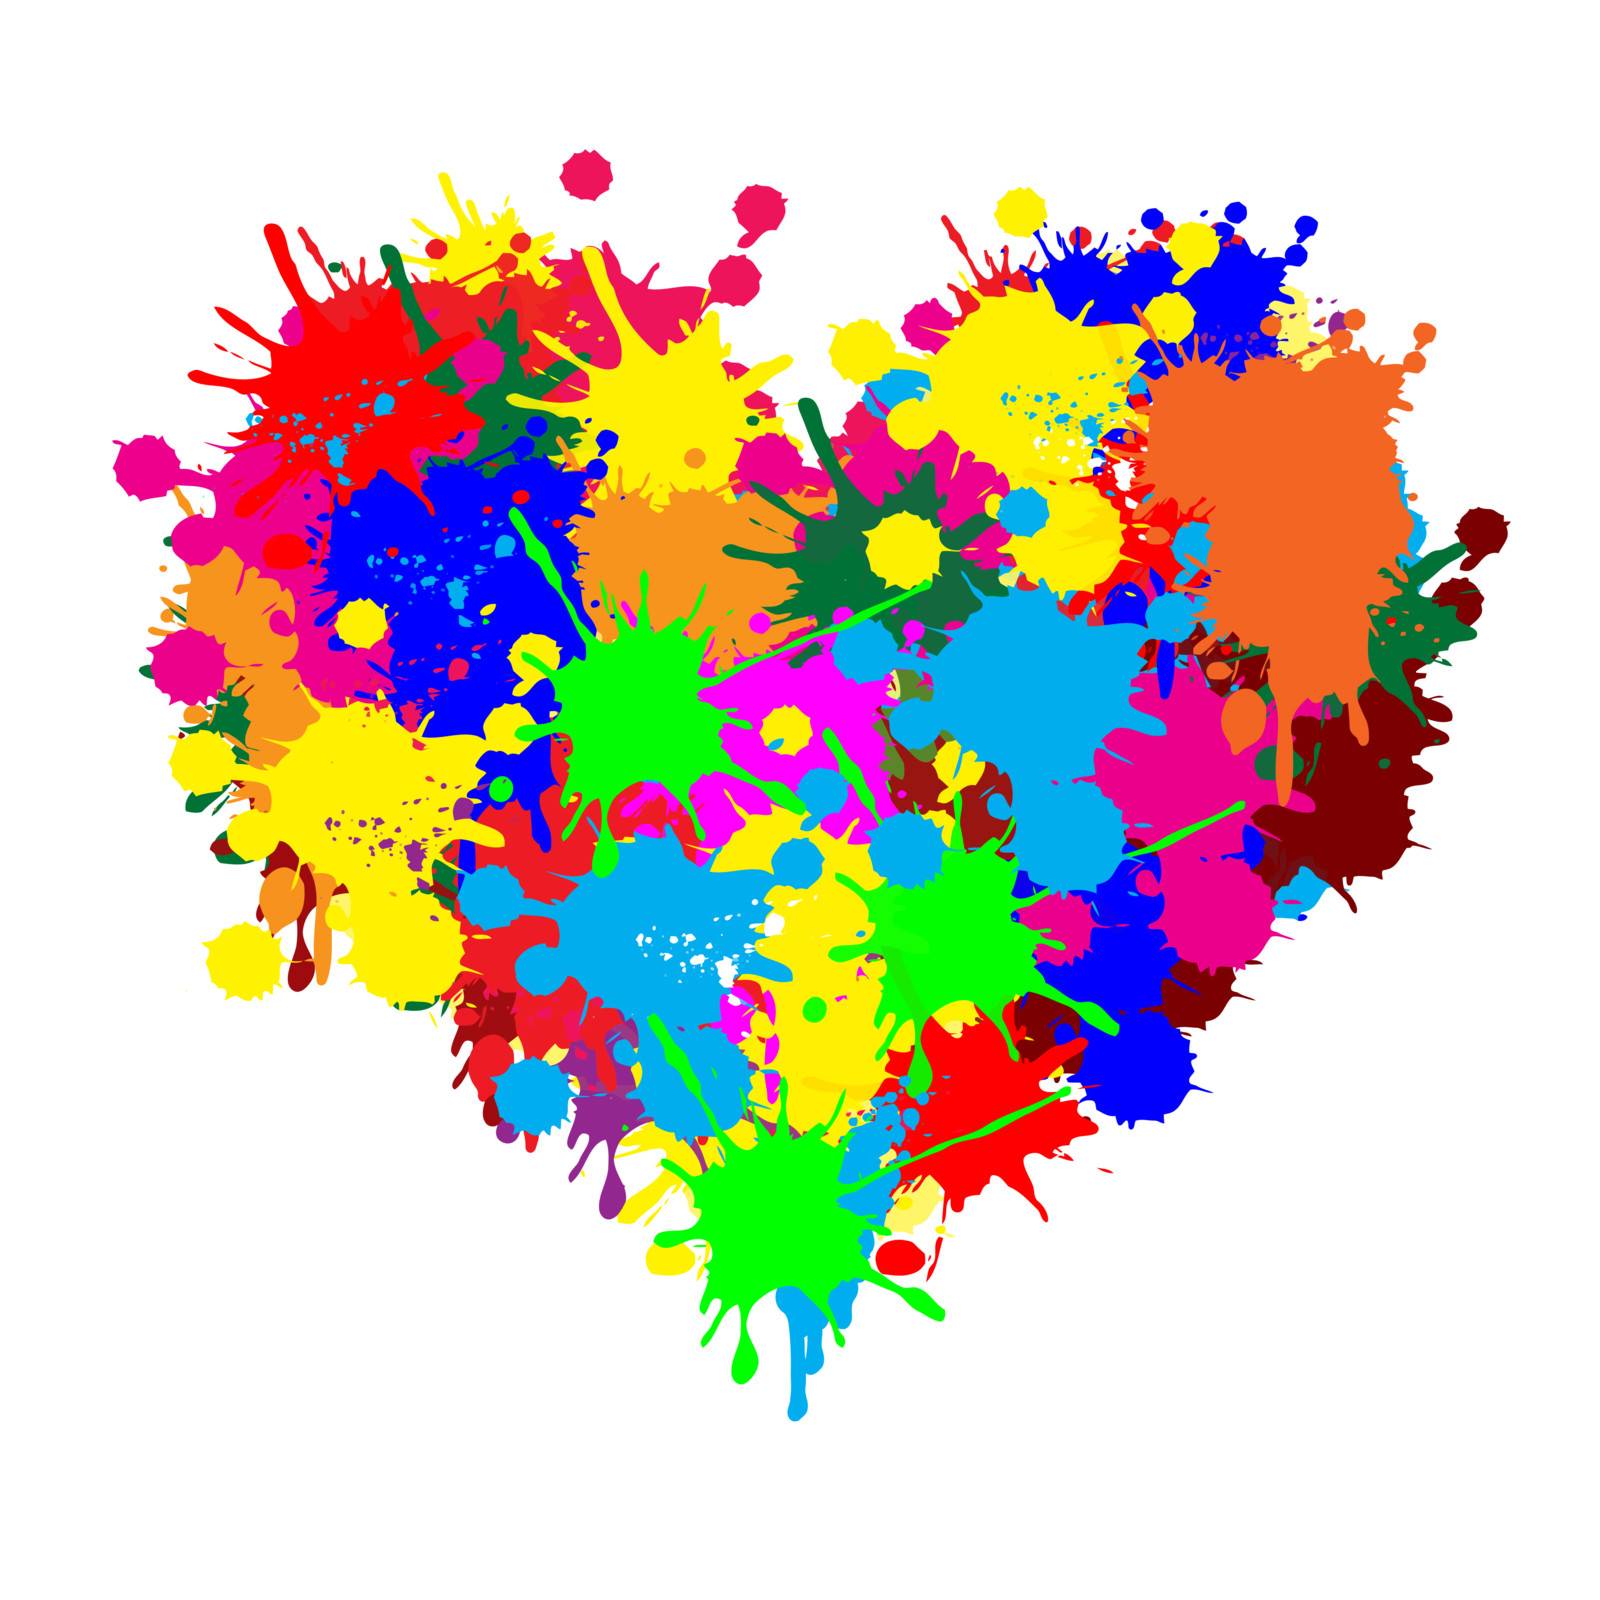 Paint splatter heart on white background, vector illustration